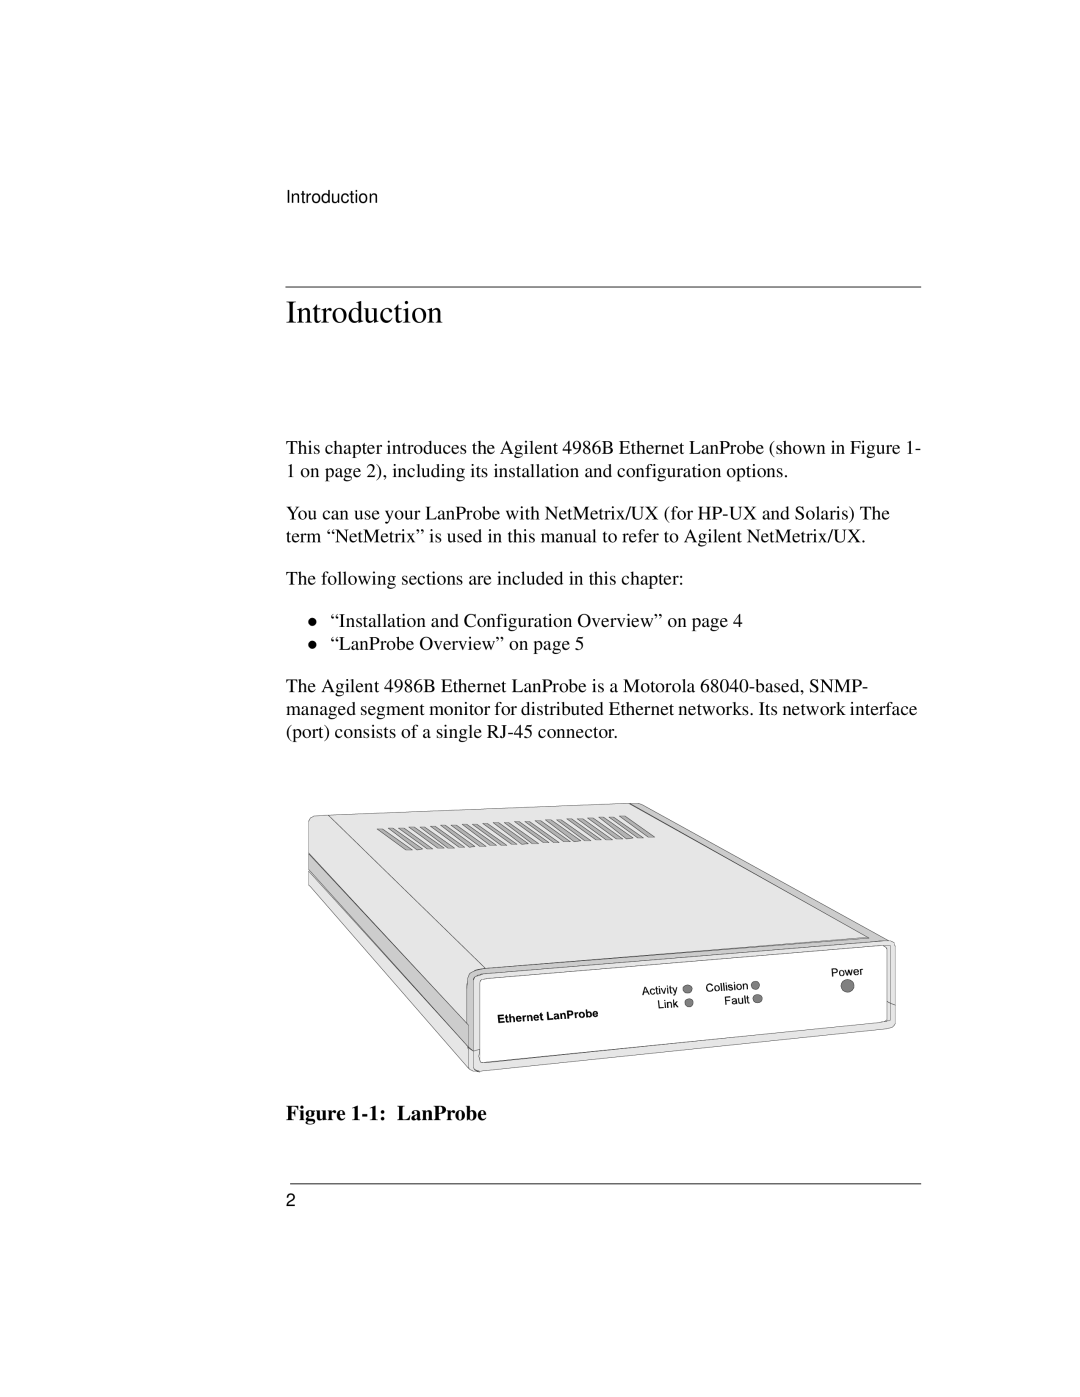 IBM 4986B LanProbe manual Introduction, 1 LanProbe 